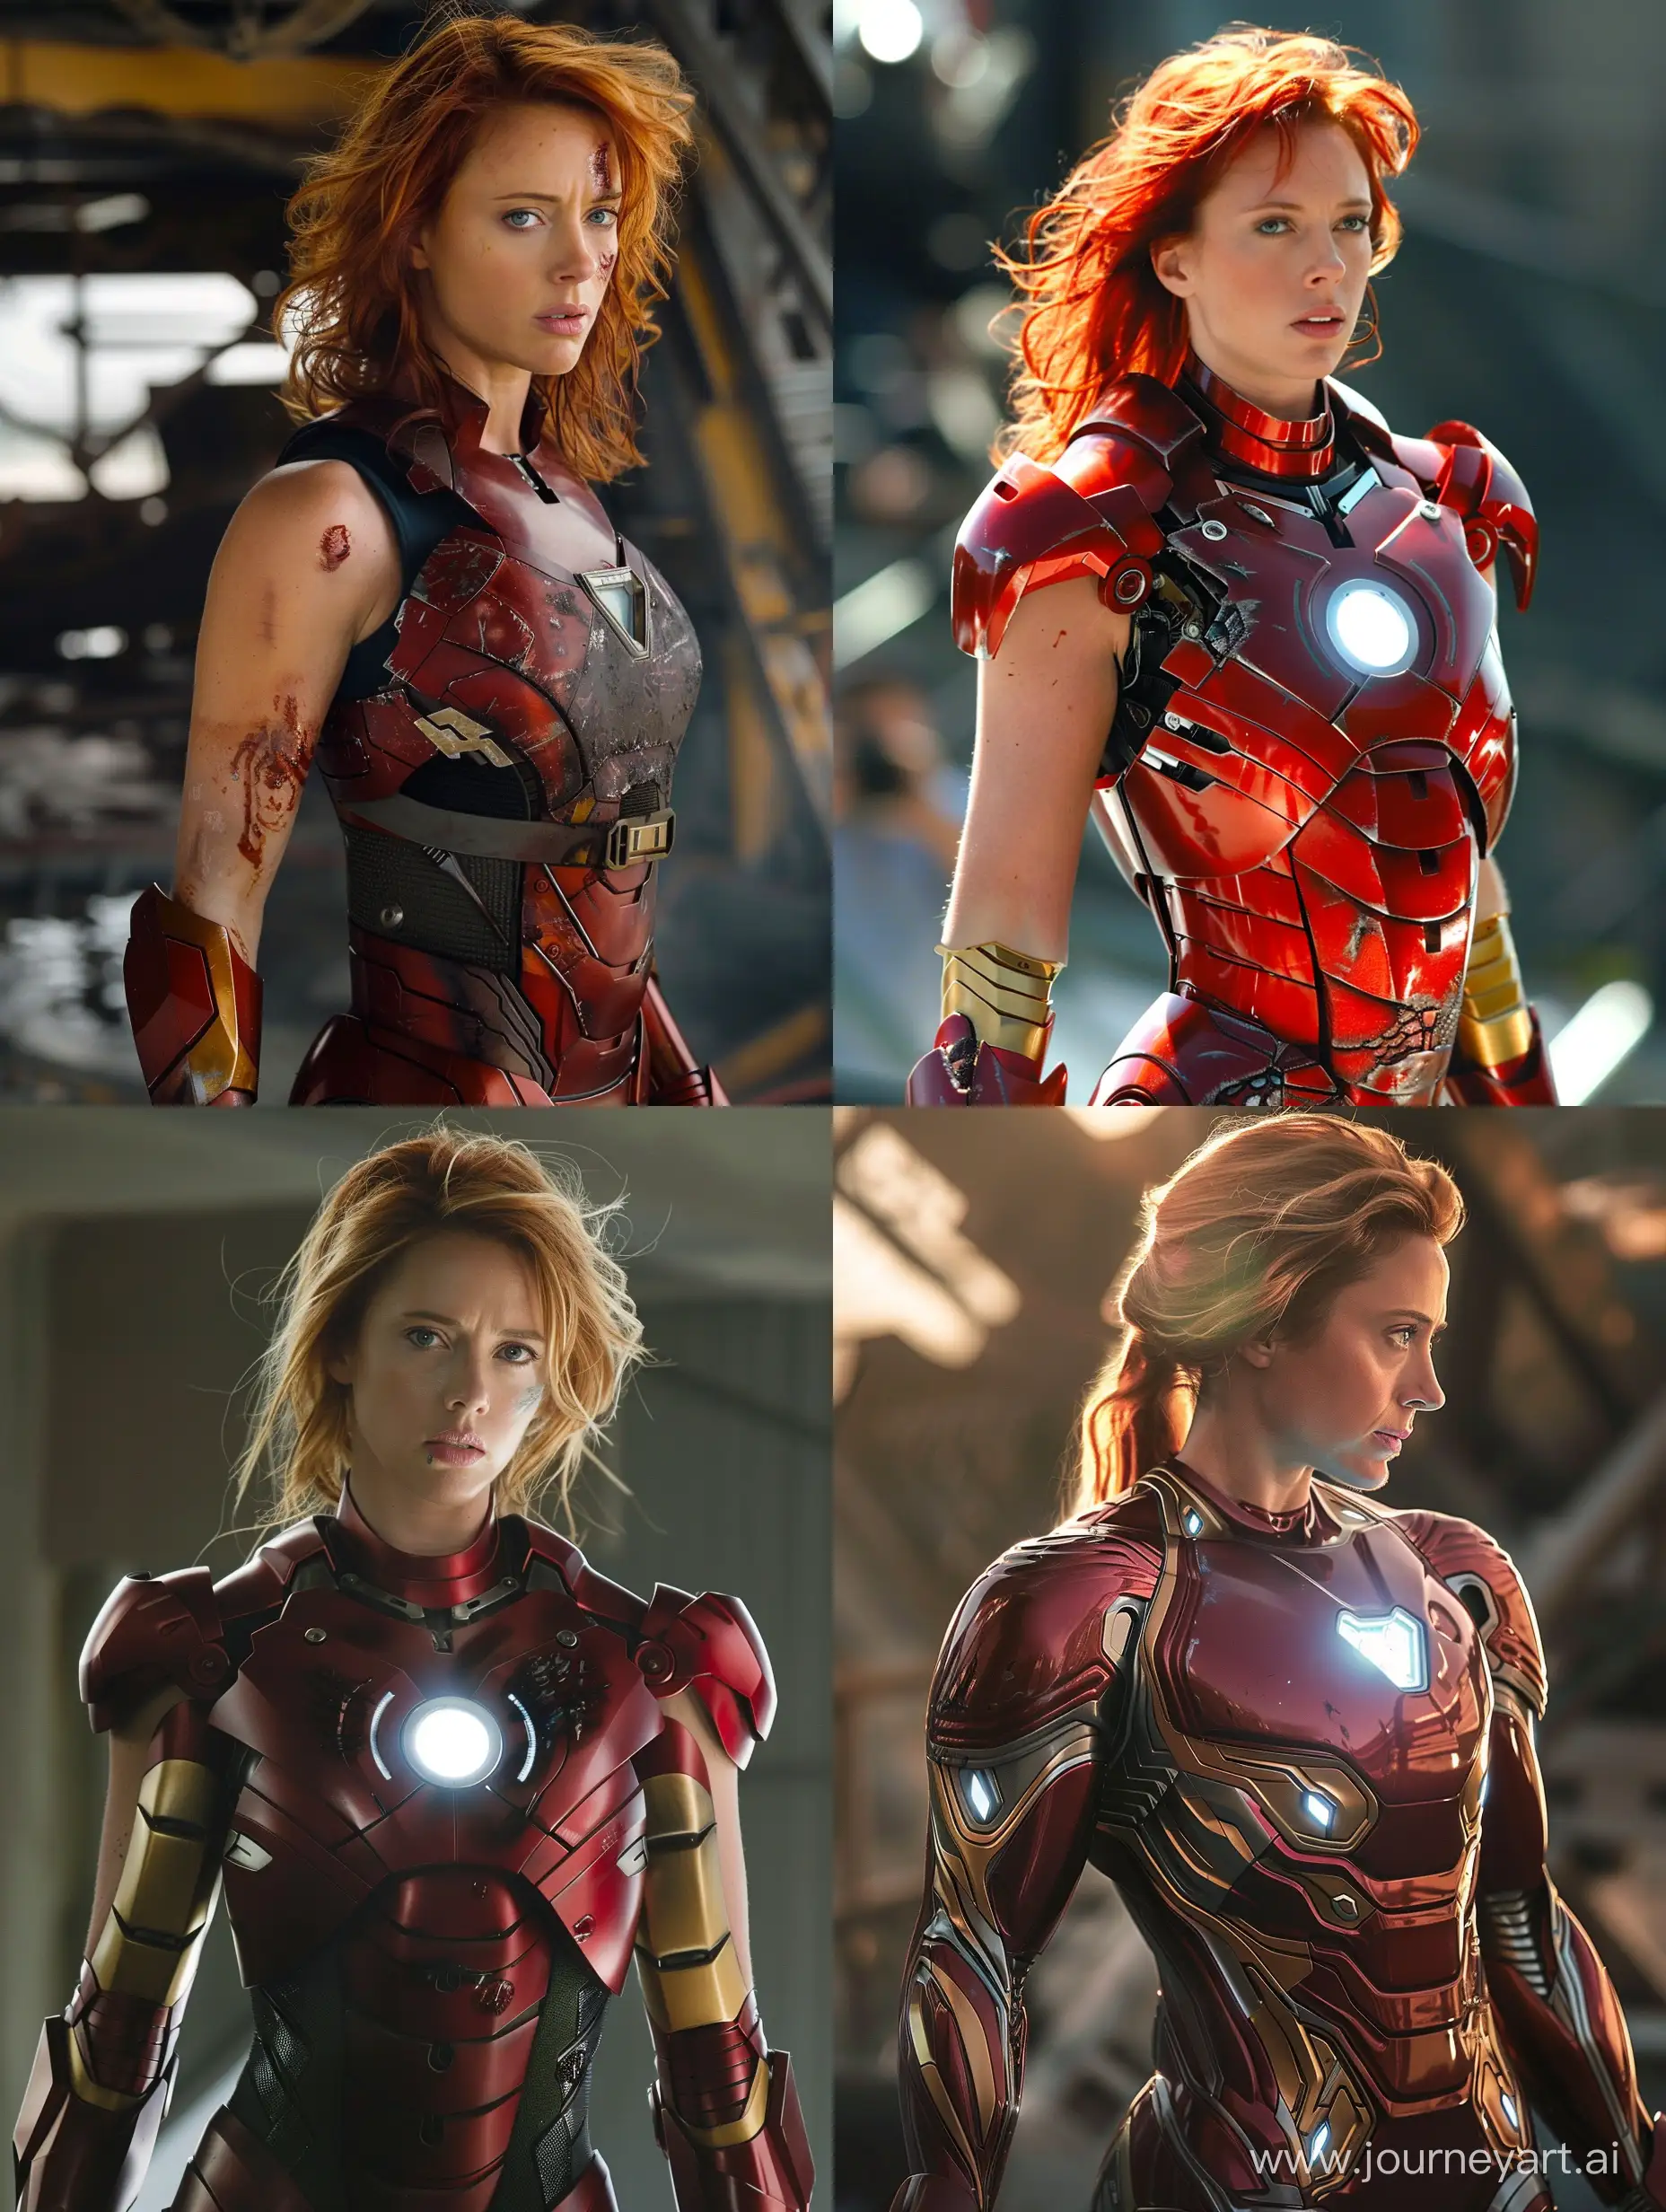 Scarlett Johansson turns into Iron Man